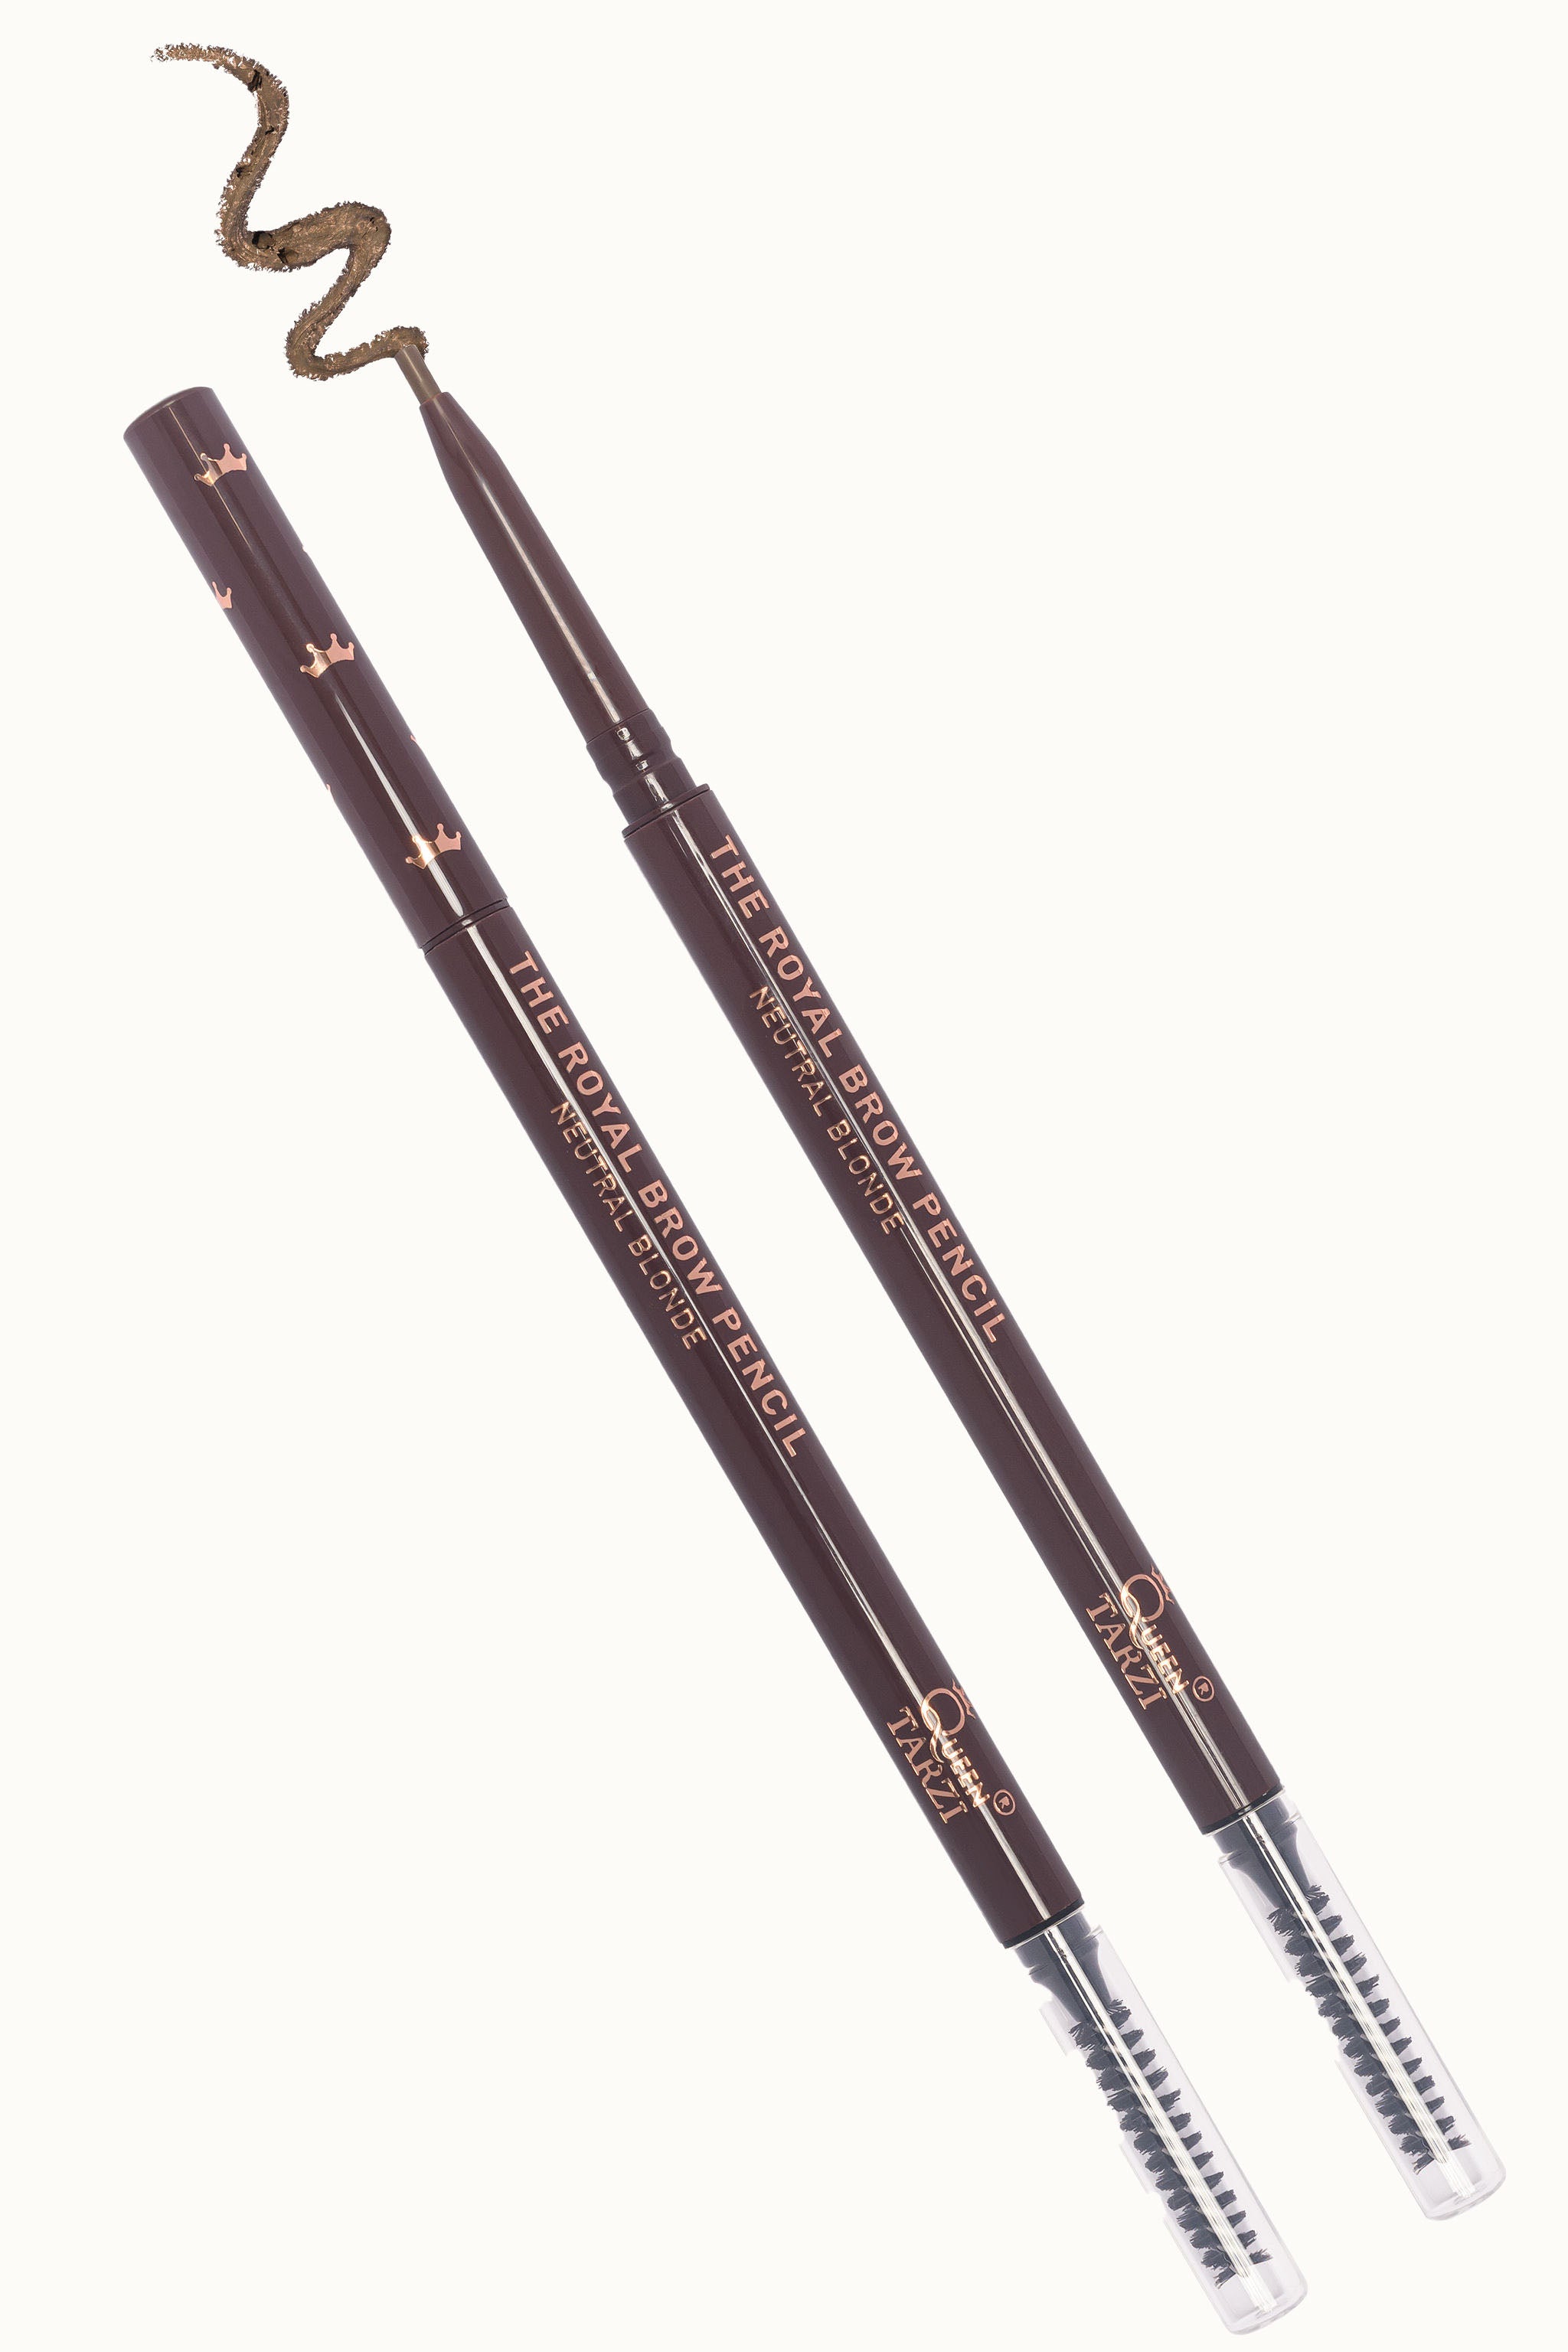 Der Royal Brow Pencil